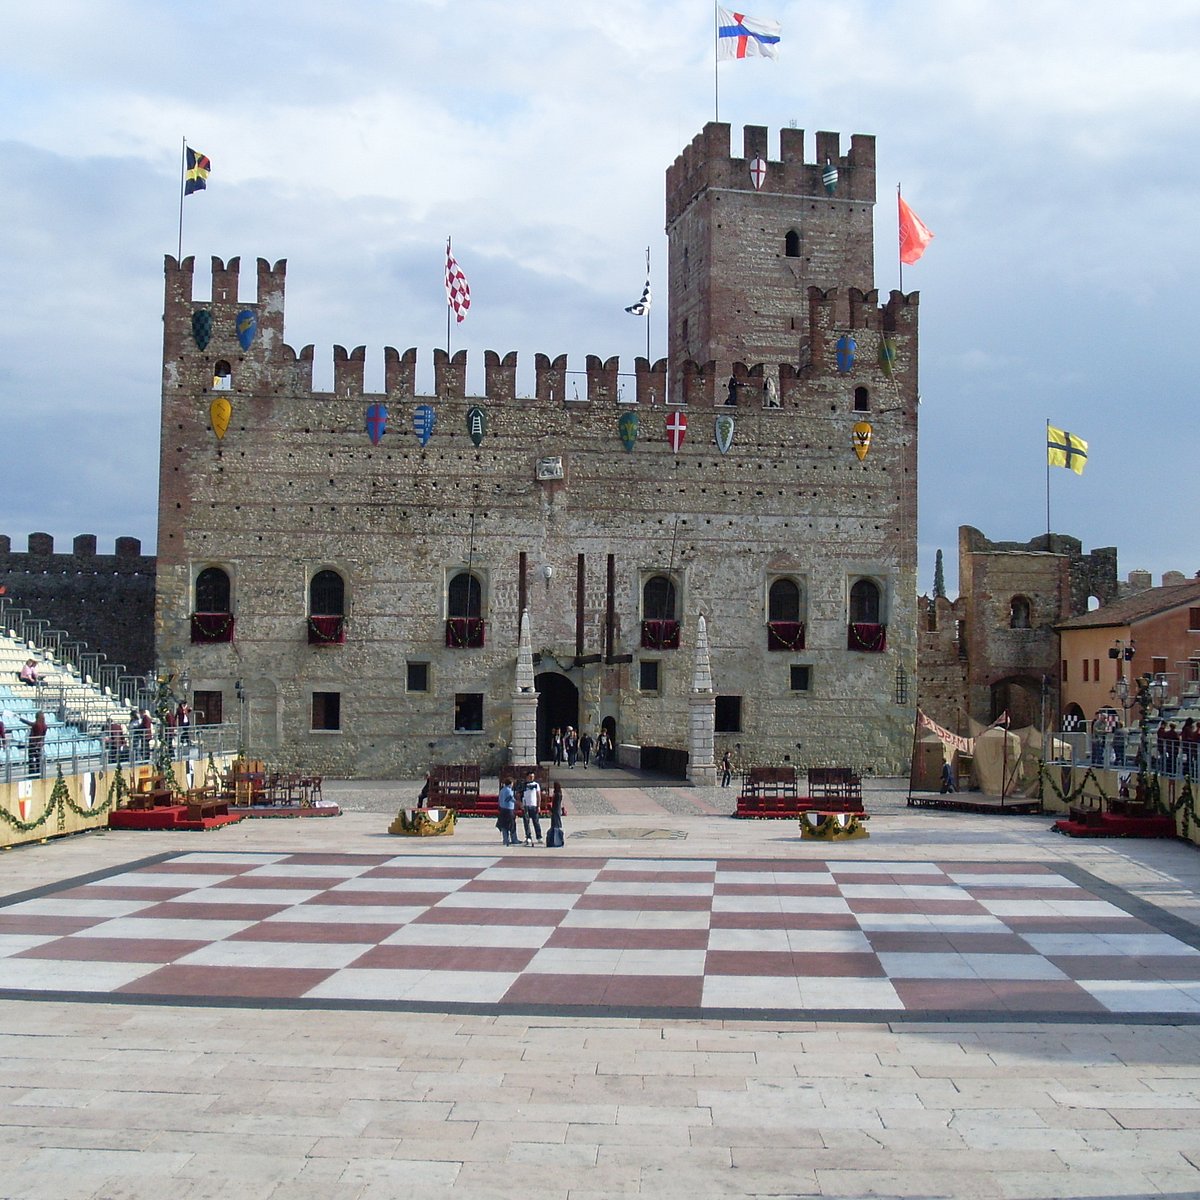 Marostica, a encantadora cidade do xadrez humano - Tour na Itália